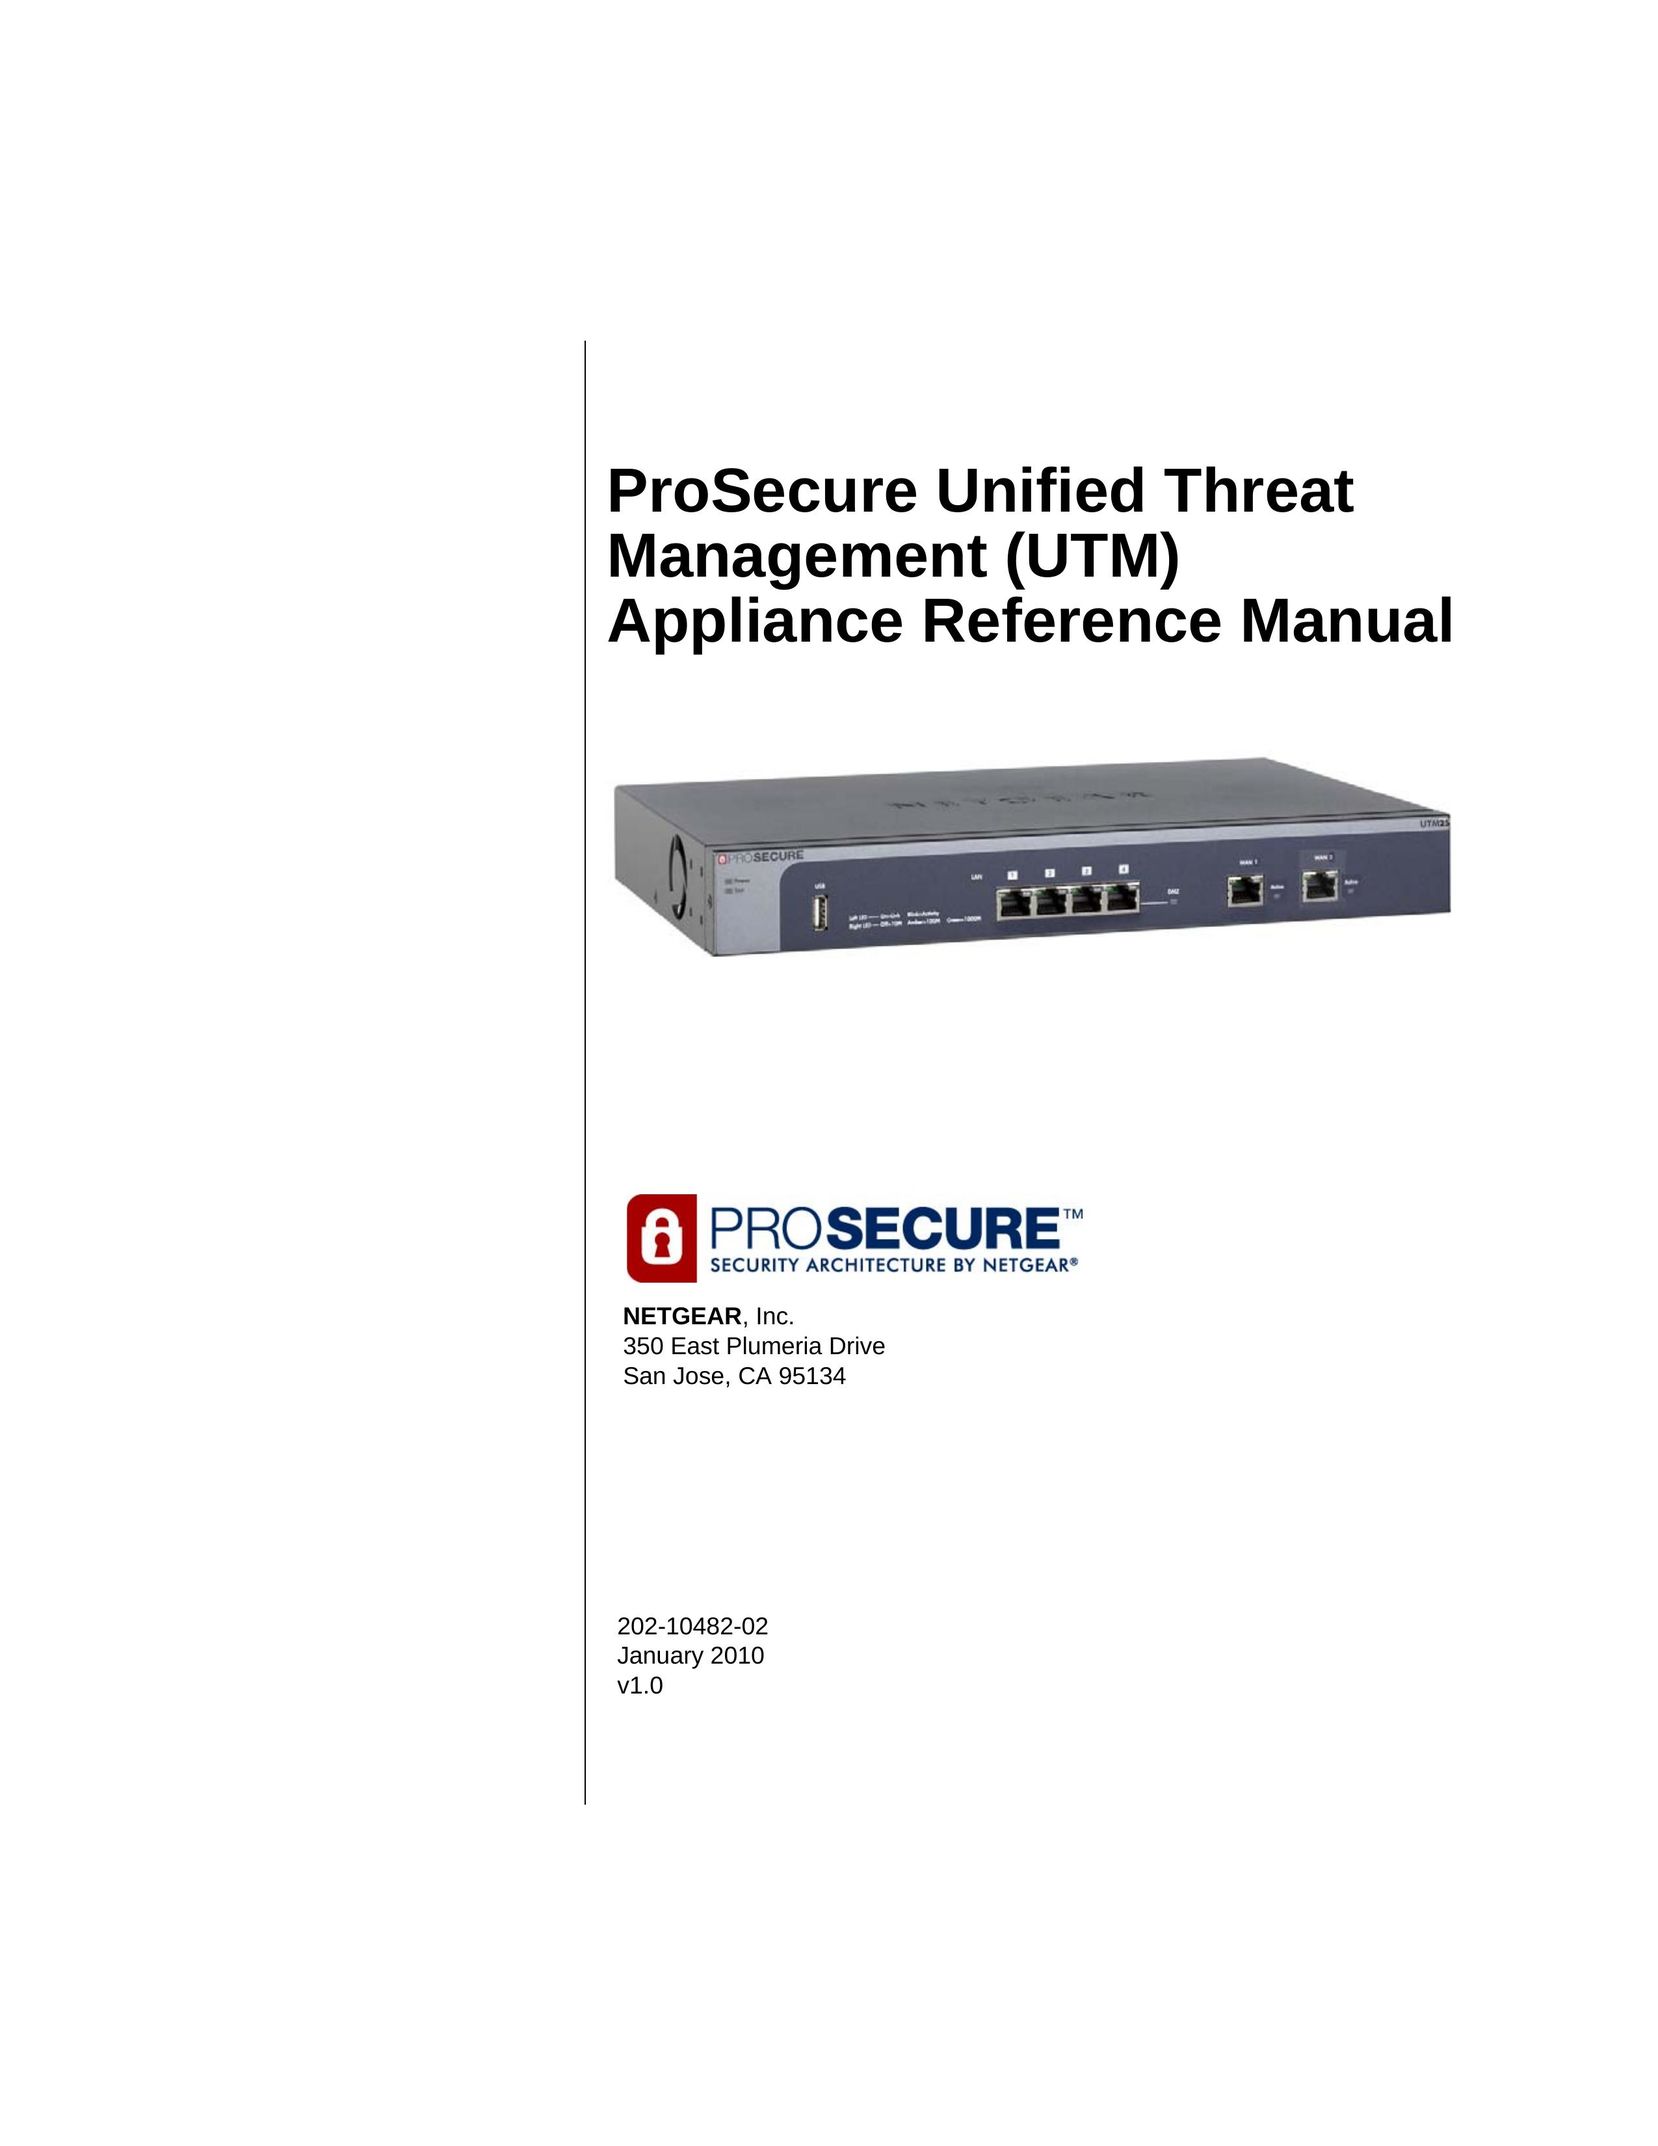 NETGEAR UTM50-100NAS Network Hardware User Manual